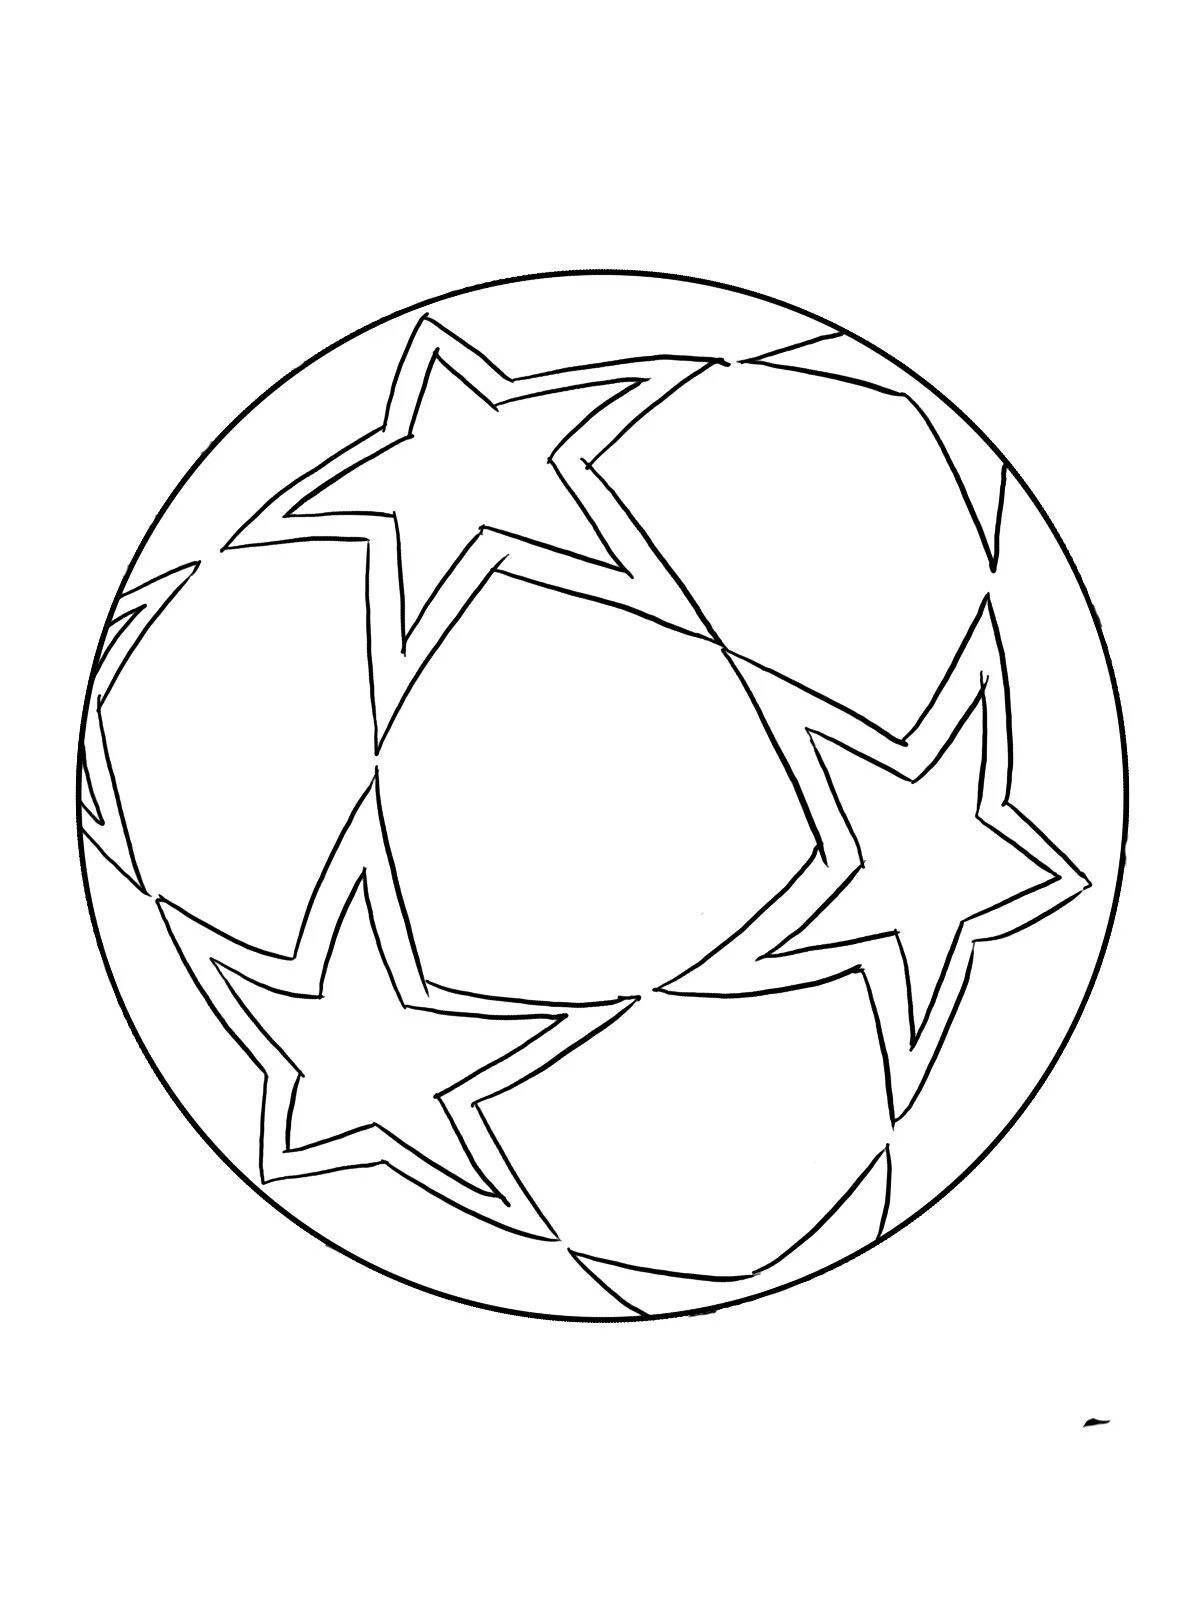 Развлекательная раскраска футбольного мяча для детей